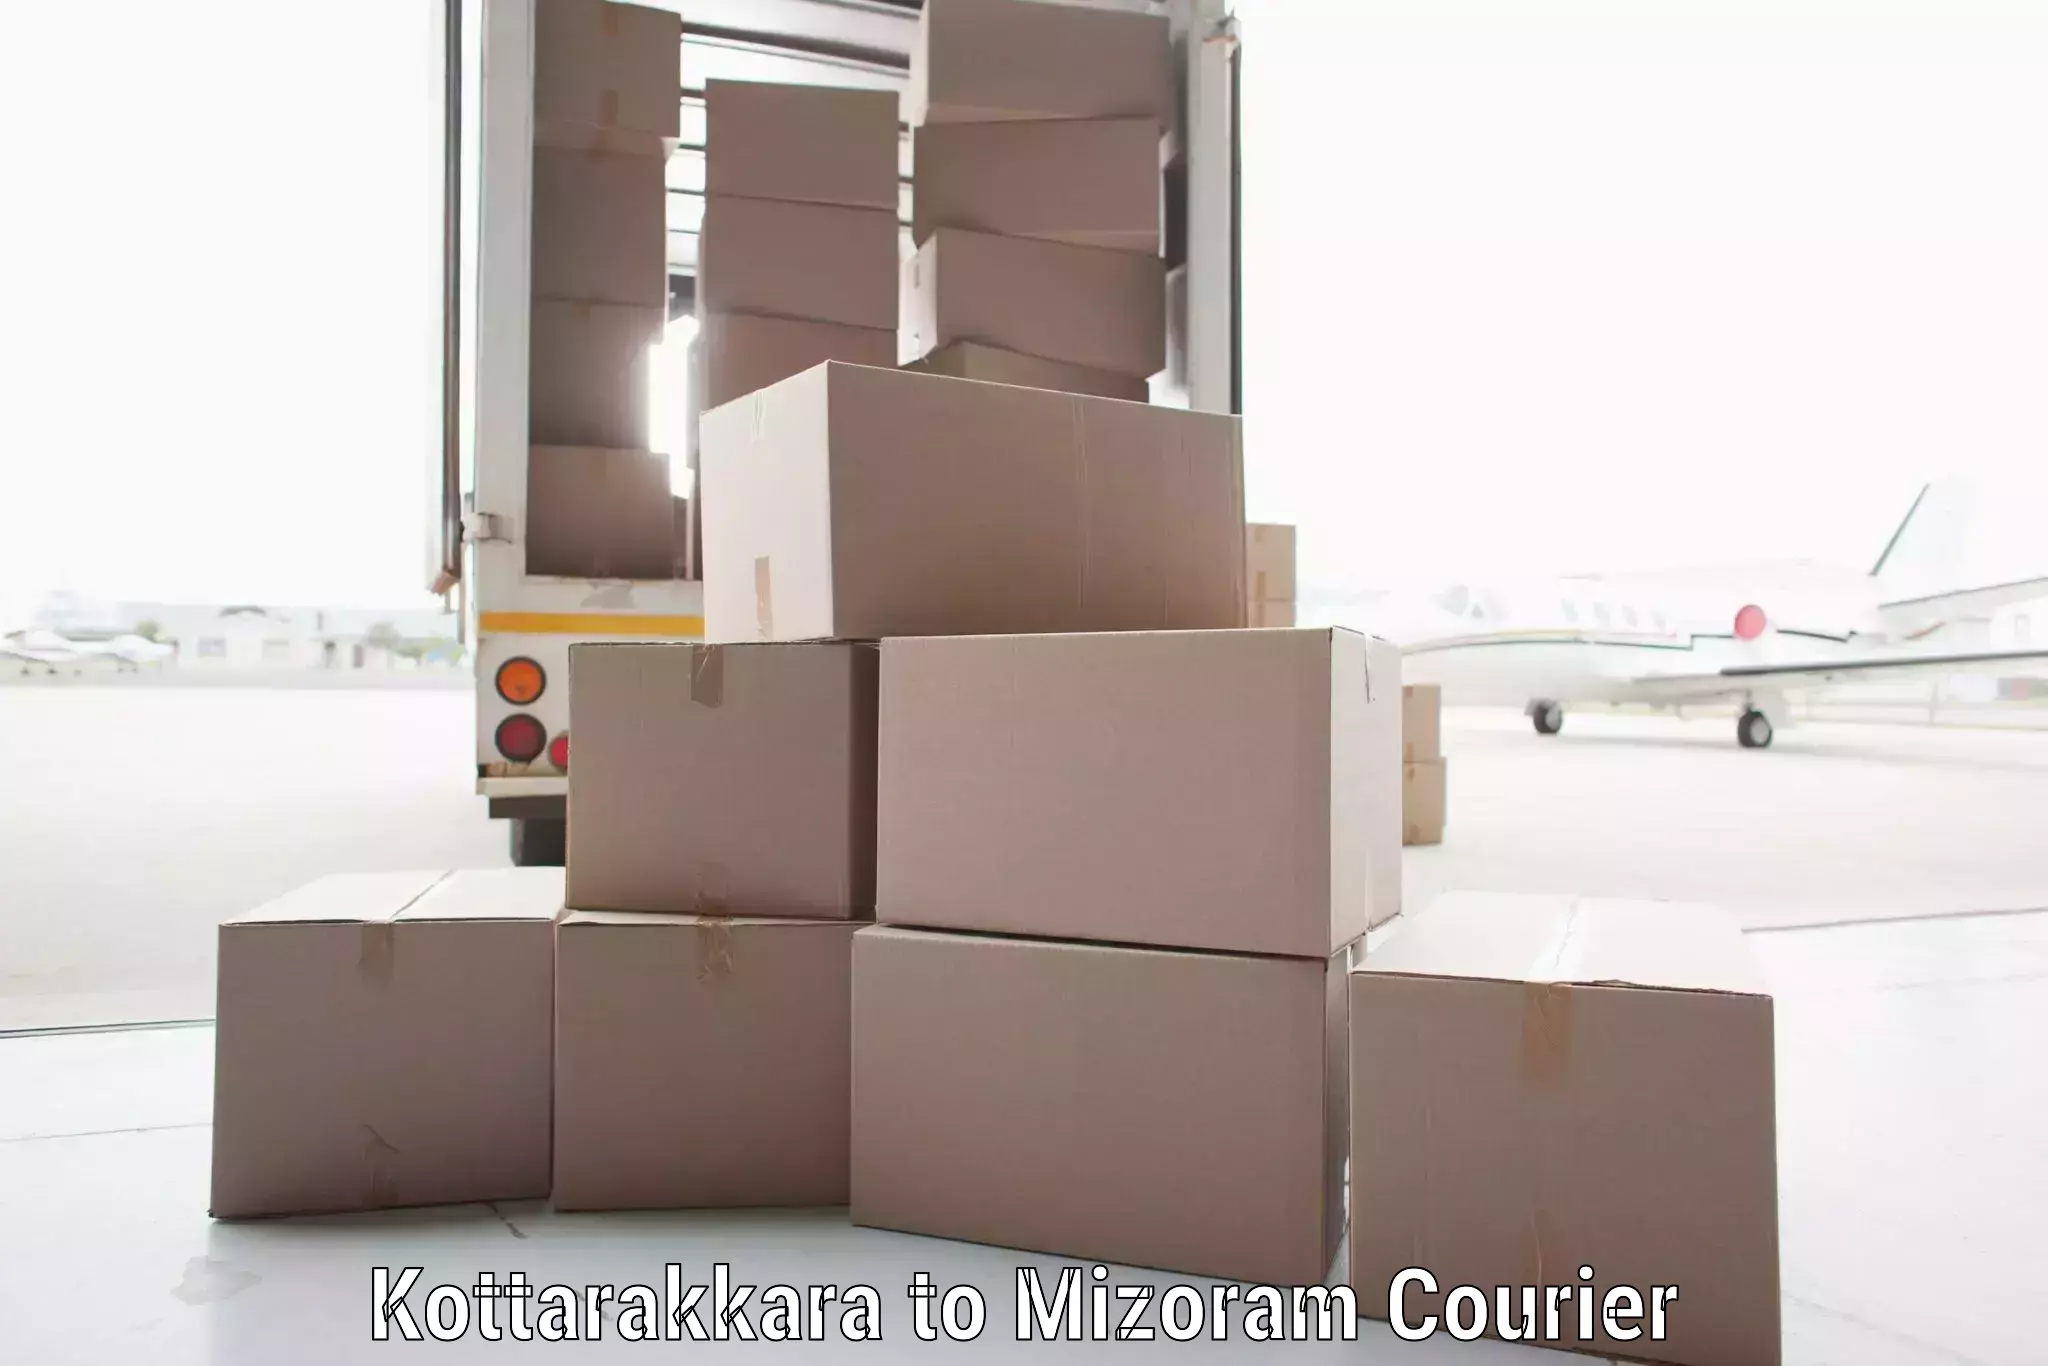 Urban courier service Kottarakkara to Thenzawl